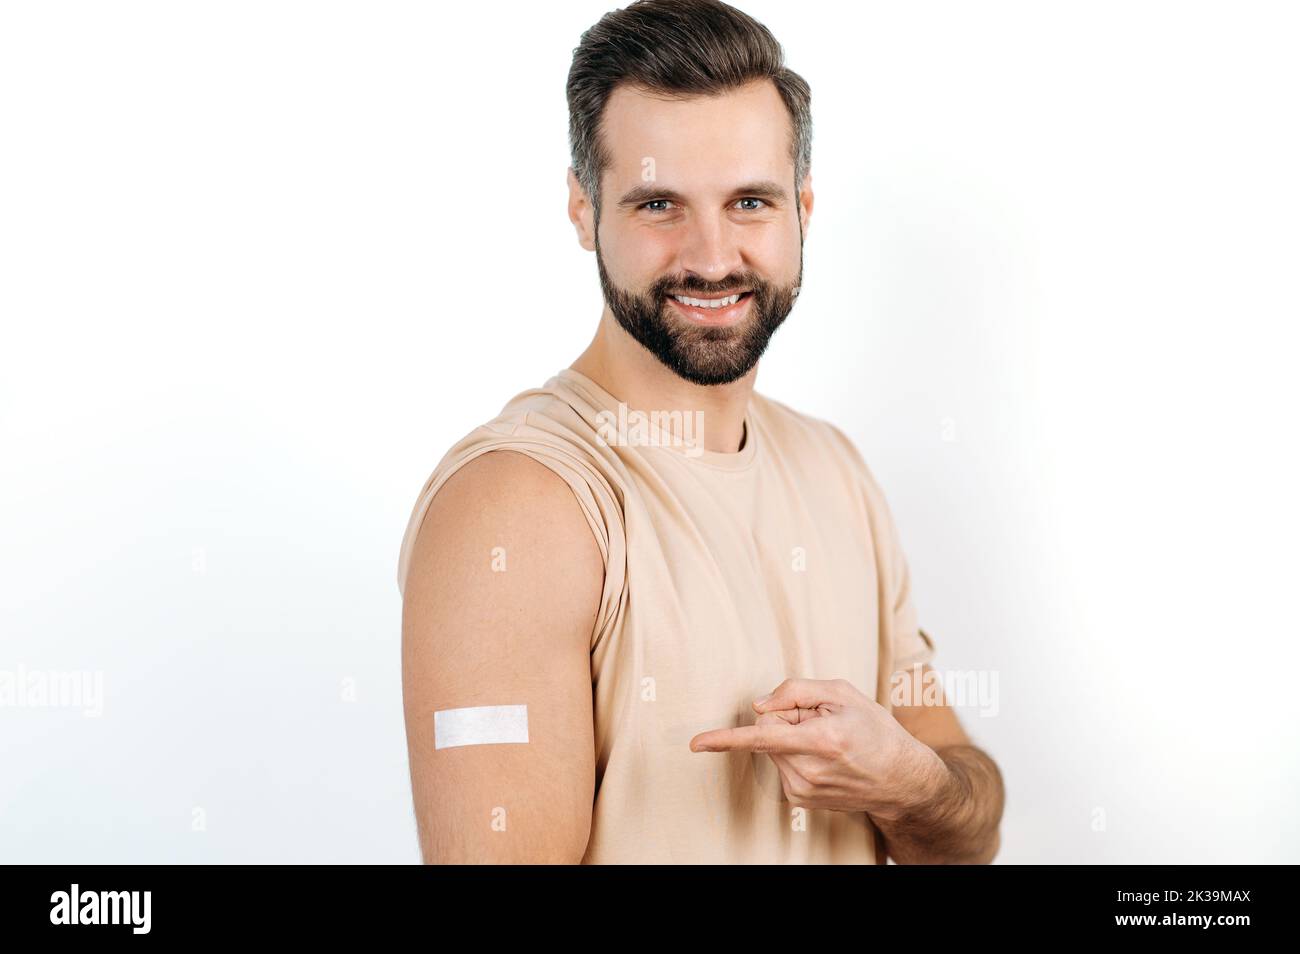 Vaccination, prévention des maladies. Positif Joyeux homme caucasien, avec un plâtre sur son épaule, a reçu un vaccin, pointe un doigt dessus, se tient sur un fond blanc isolé, regarde la caméra, sourire Banque D'Images